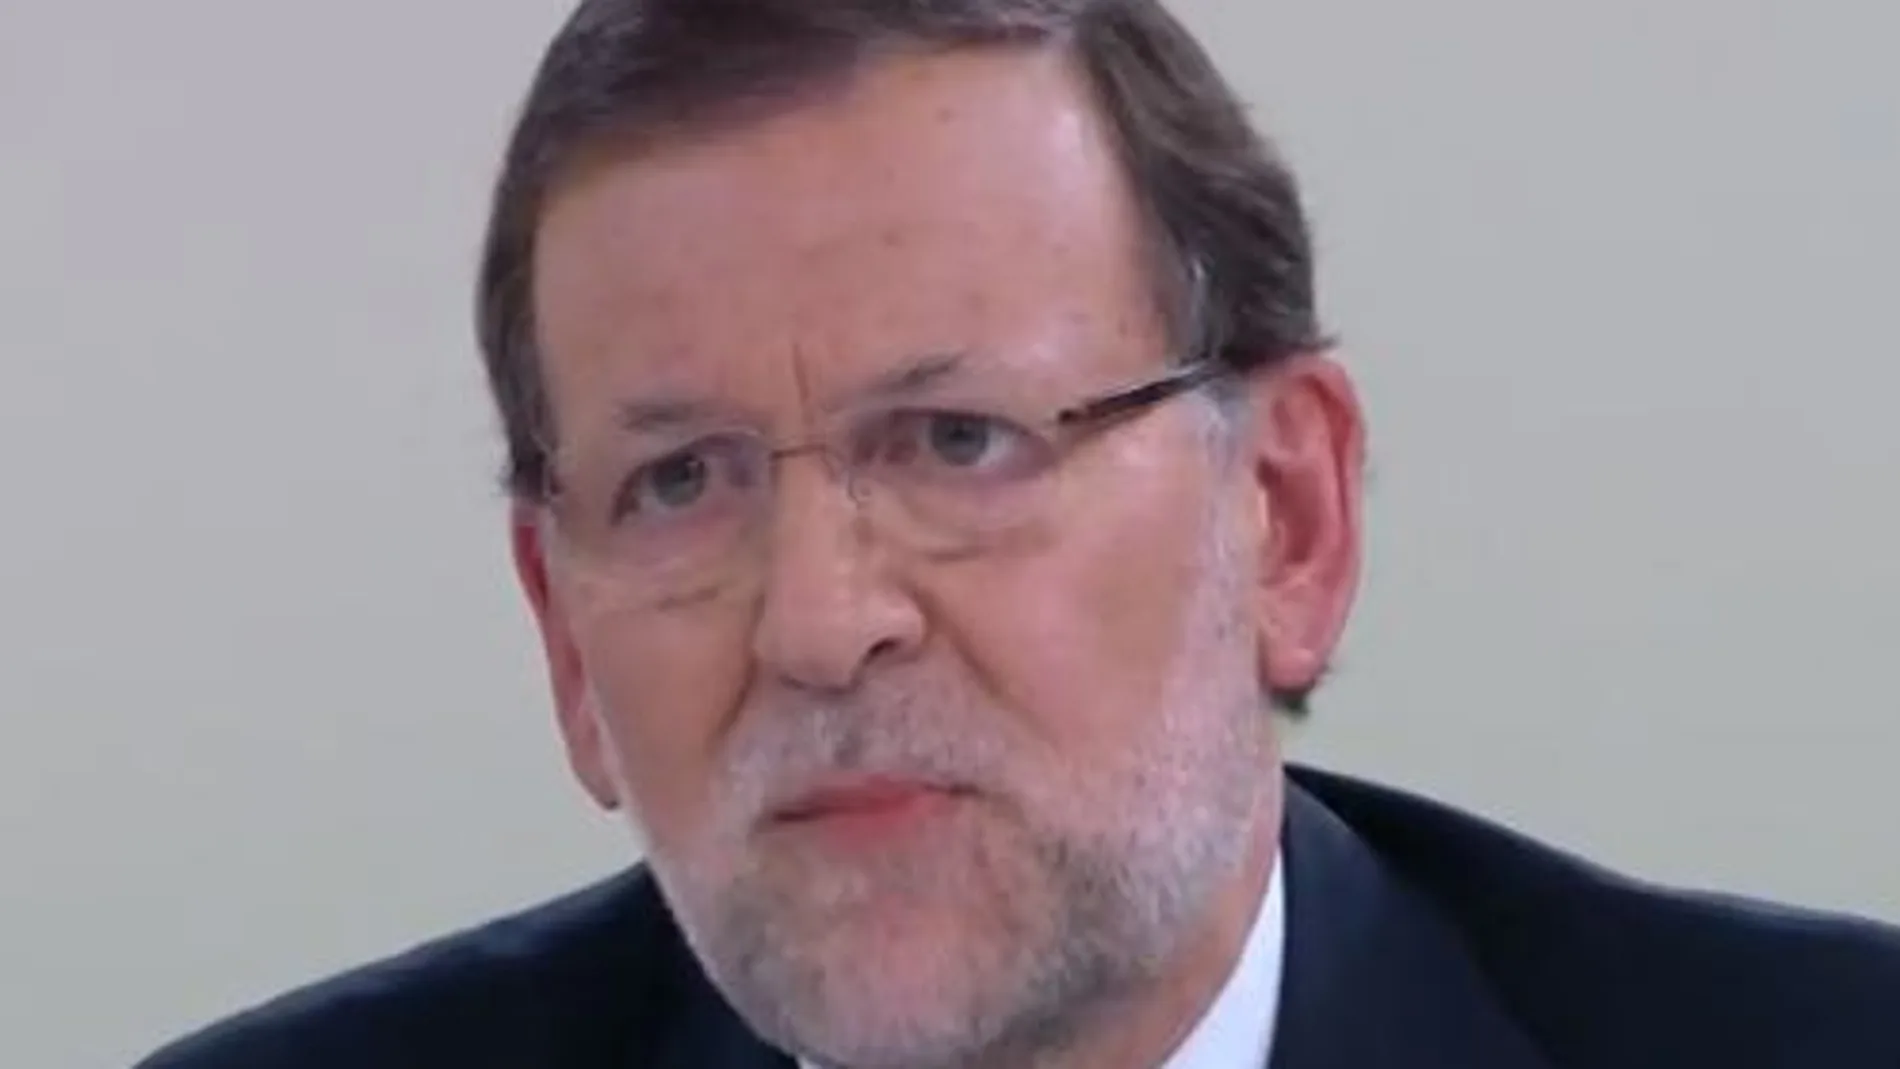 Mariano Rajoy: